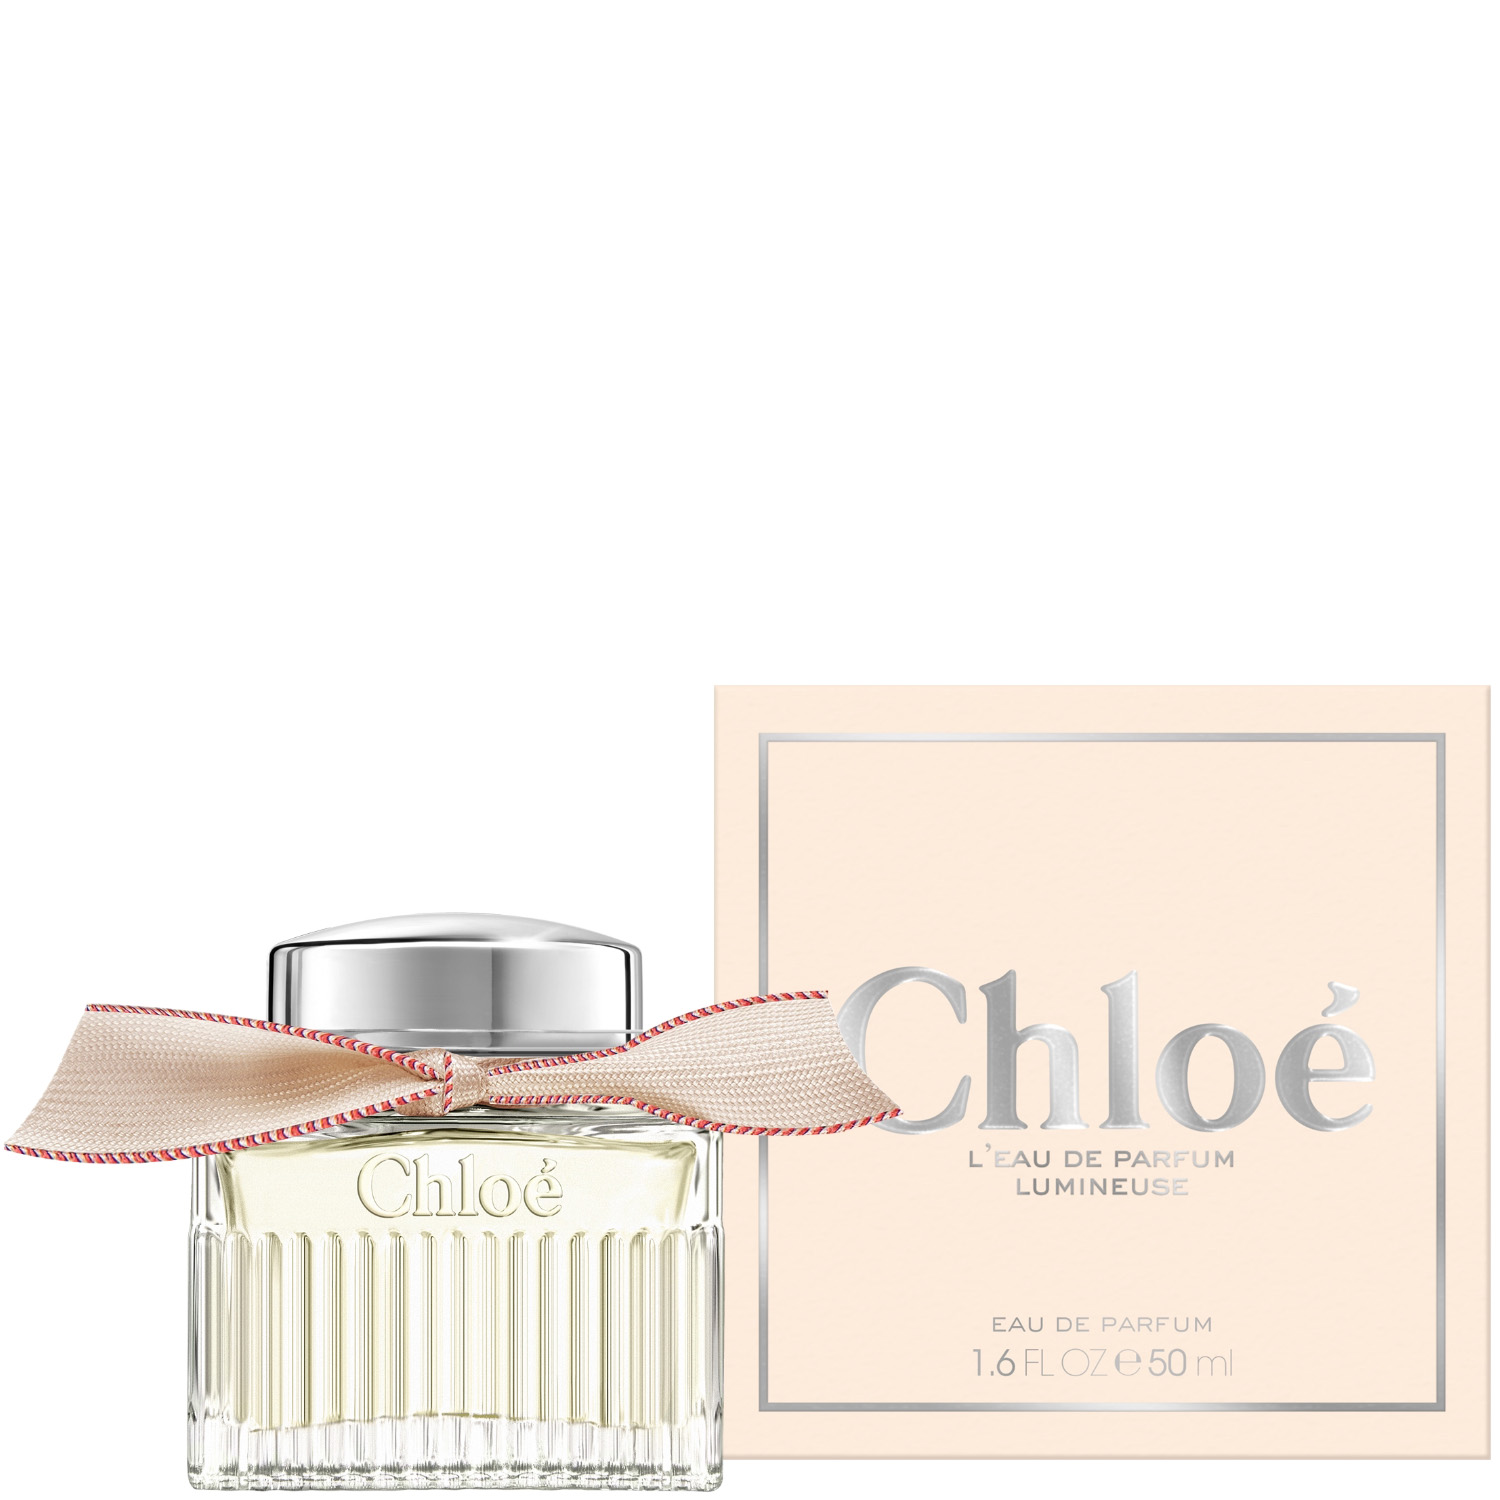 Chloé L‘Eau de Parfum Lumineuse 50ml